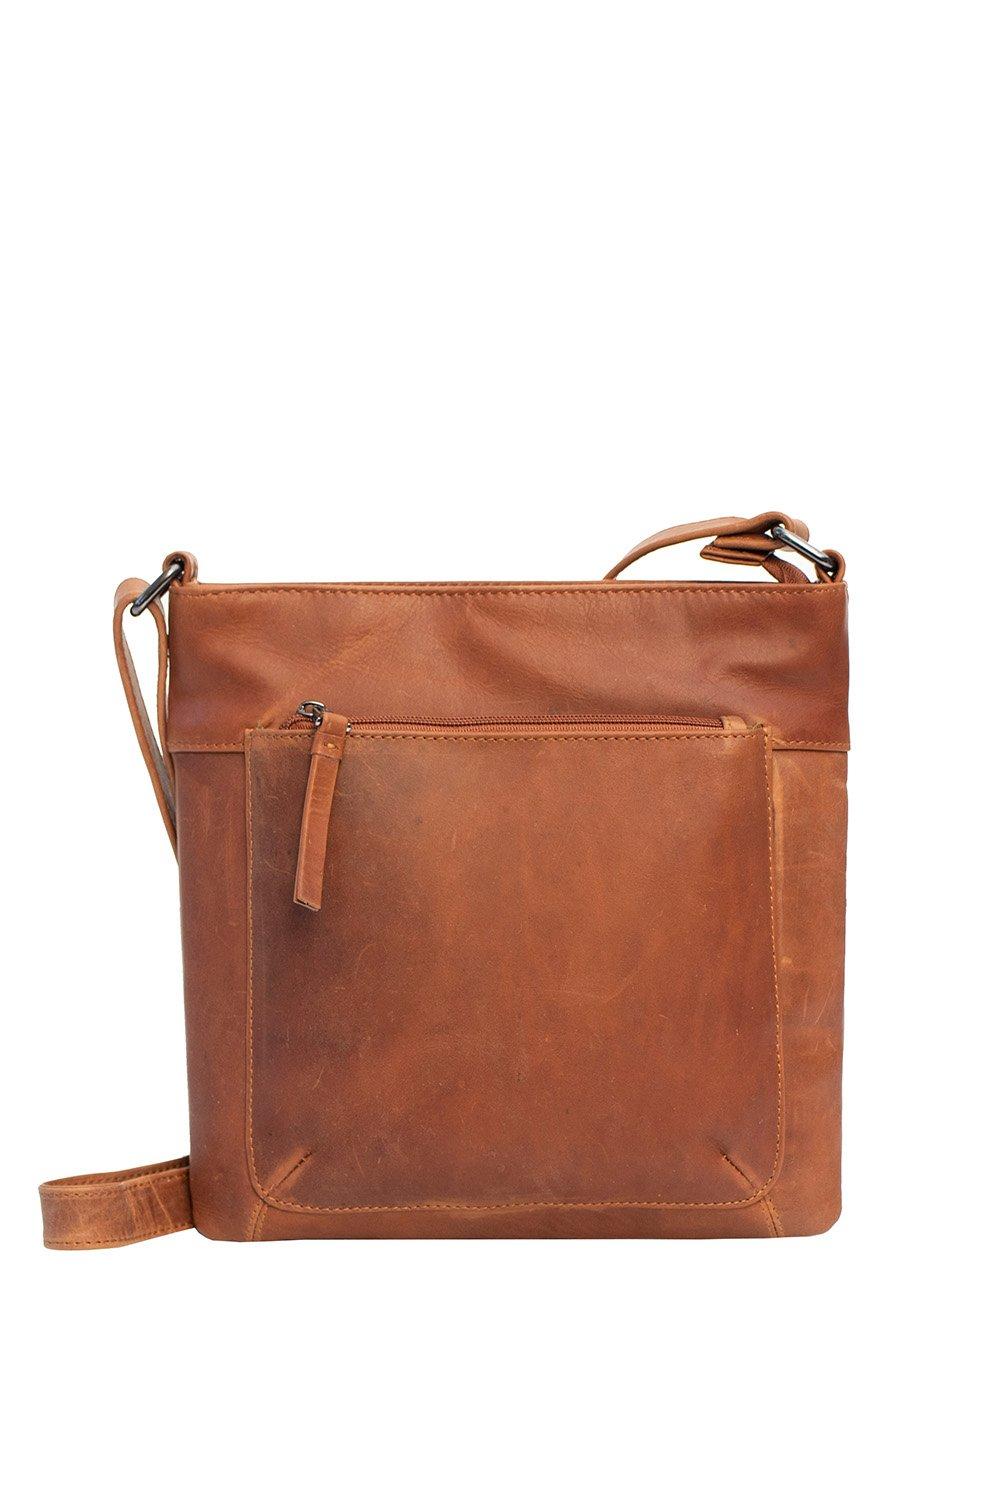 Кожаная сумка через плечо 'Техасский' PRIMEHIDE, коричневый